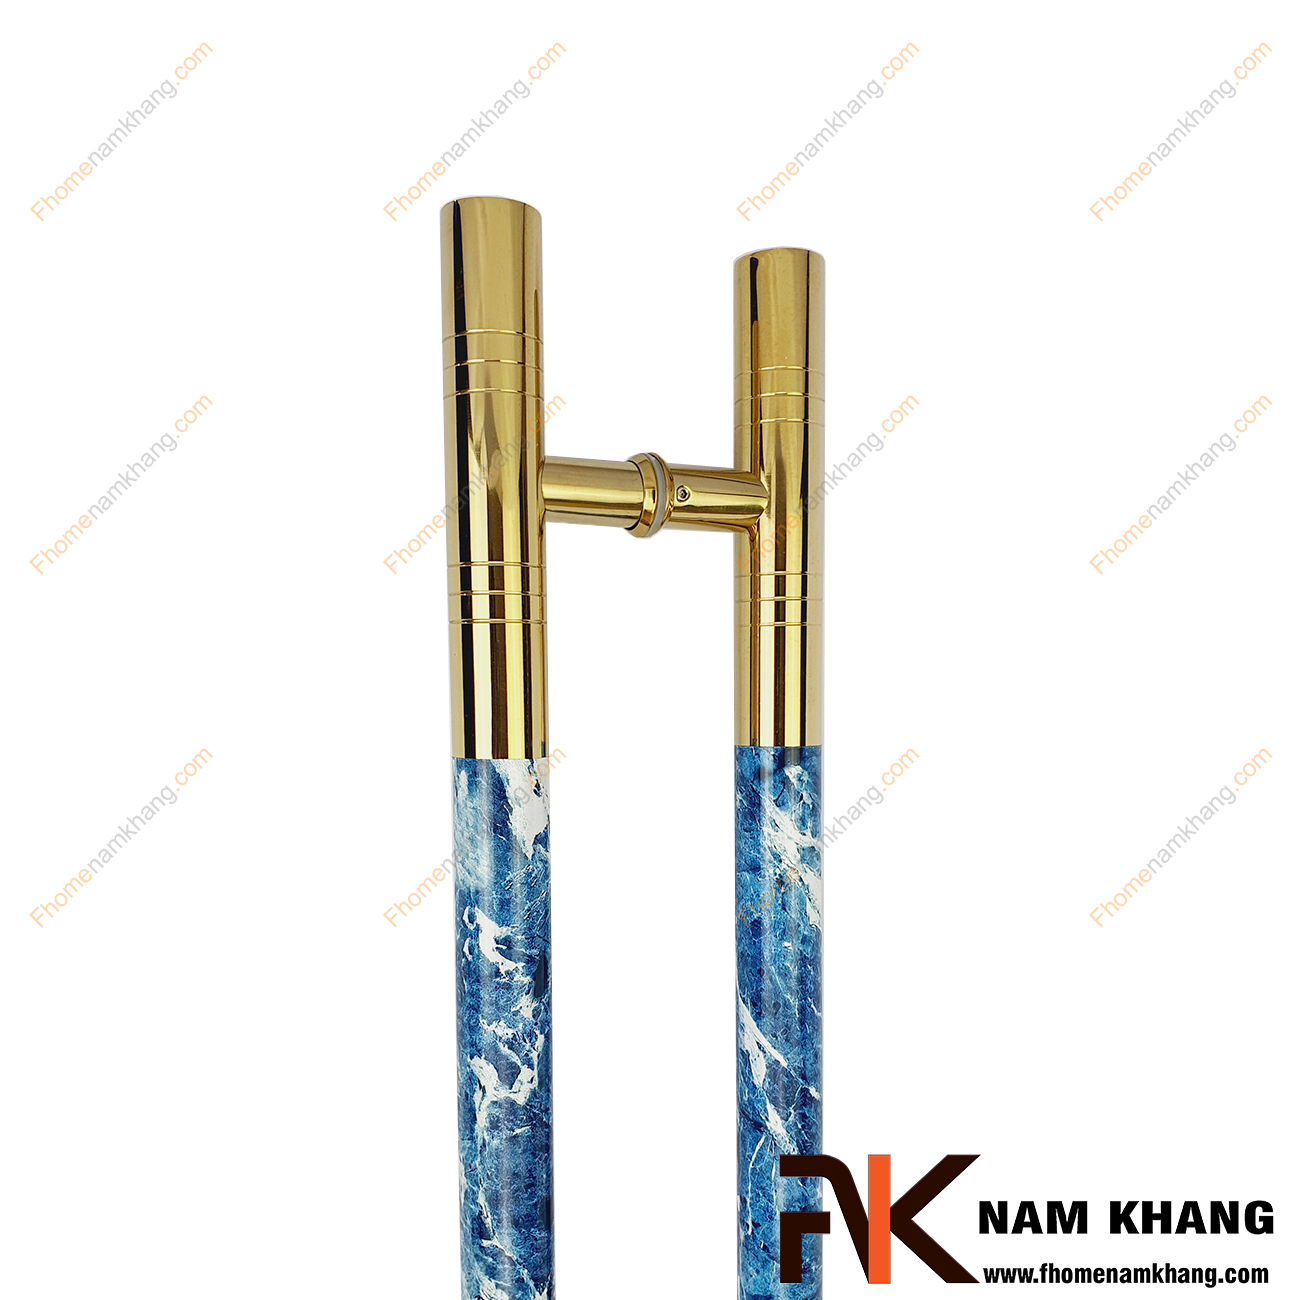 Tay nắm cửa chính màu vàng bóng phối vân đá xanh dương NKC014-VX được sản xuất từ chất liệu cao cấp, có độ bền tốt và đáp ứng độ an toàn kỹ thuật cao.